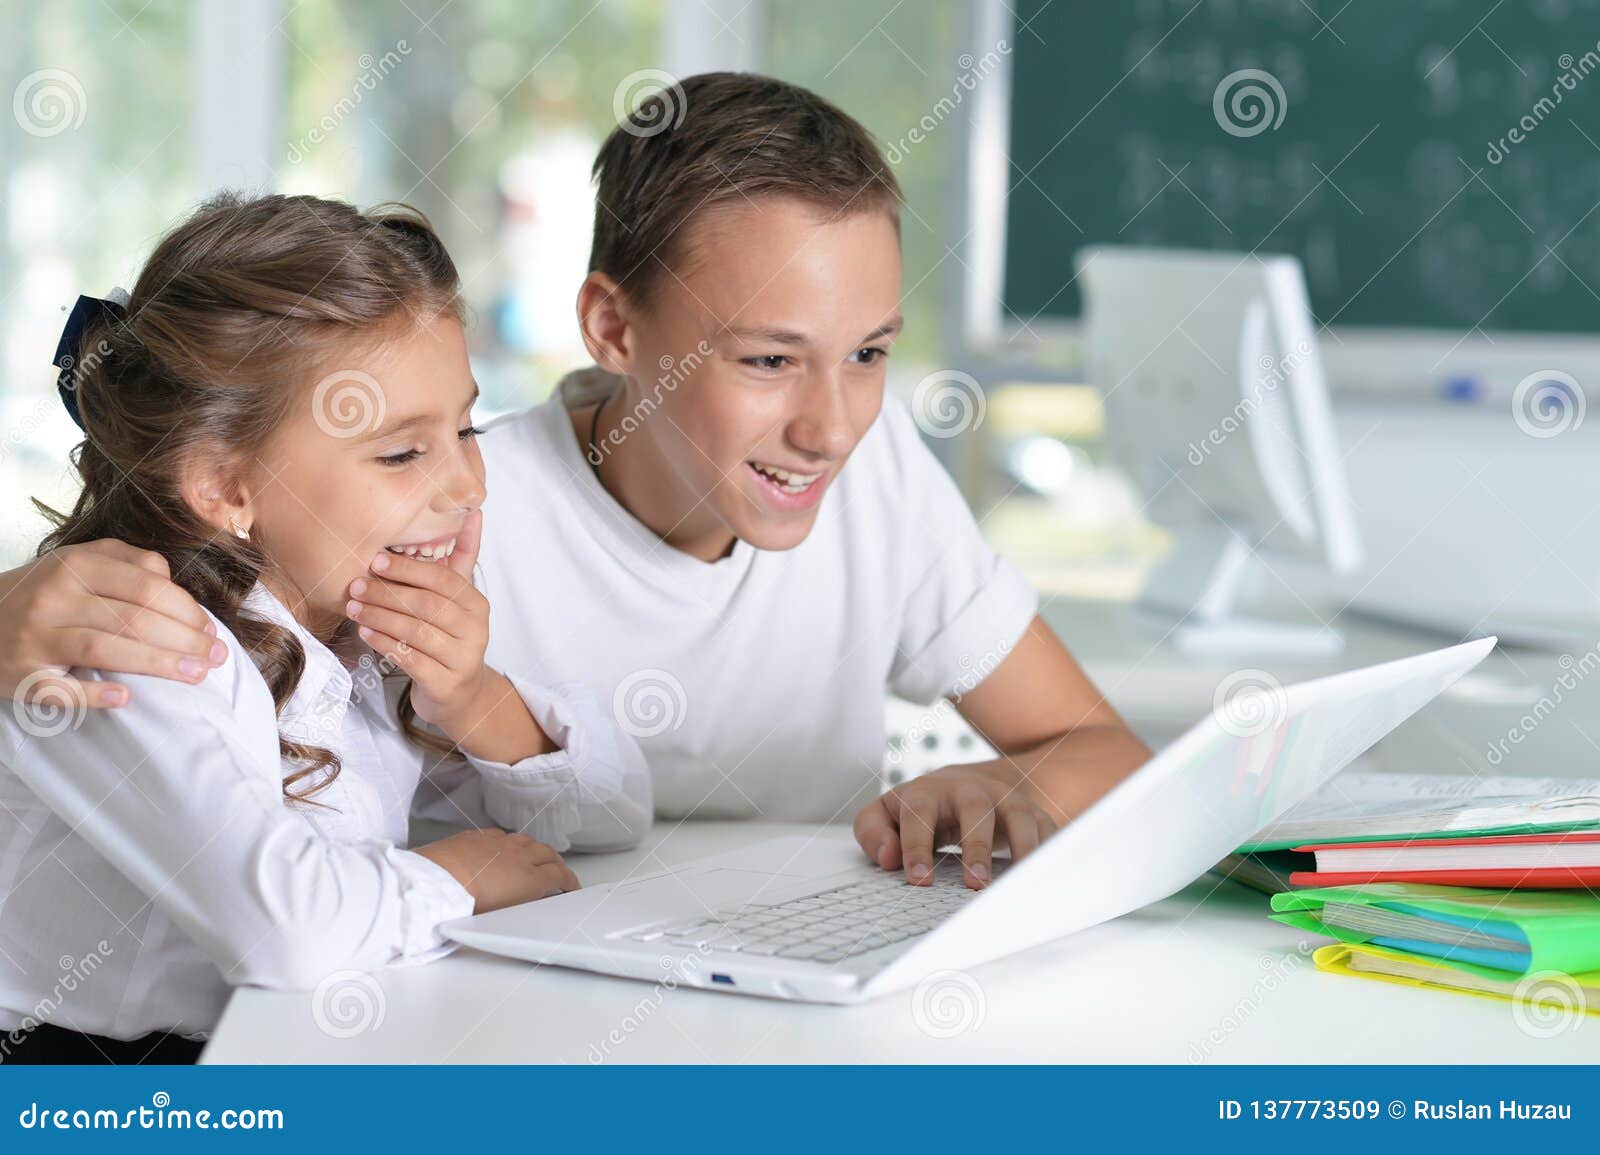 Брат помогает уроки. Брат и сестра учат уроки. Помогаю сестре сделать уроки. Учит сестру. Брат с сестрой делают уроки.